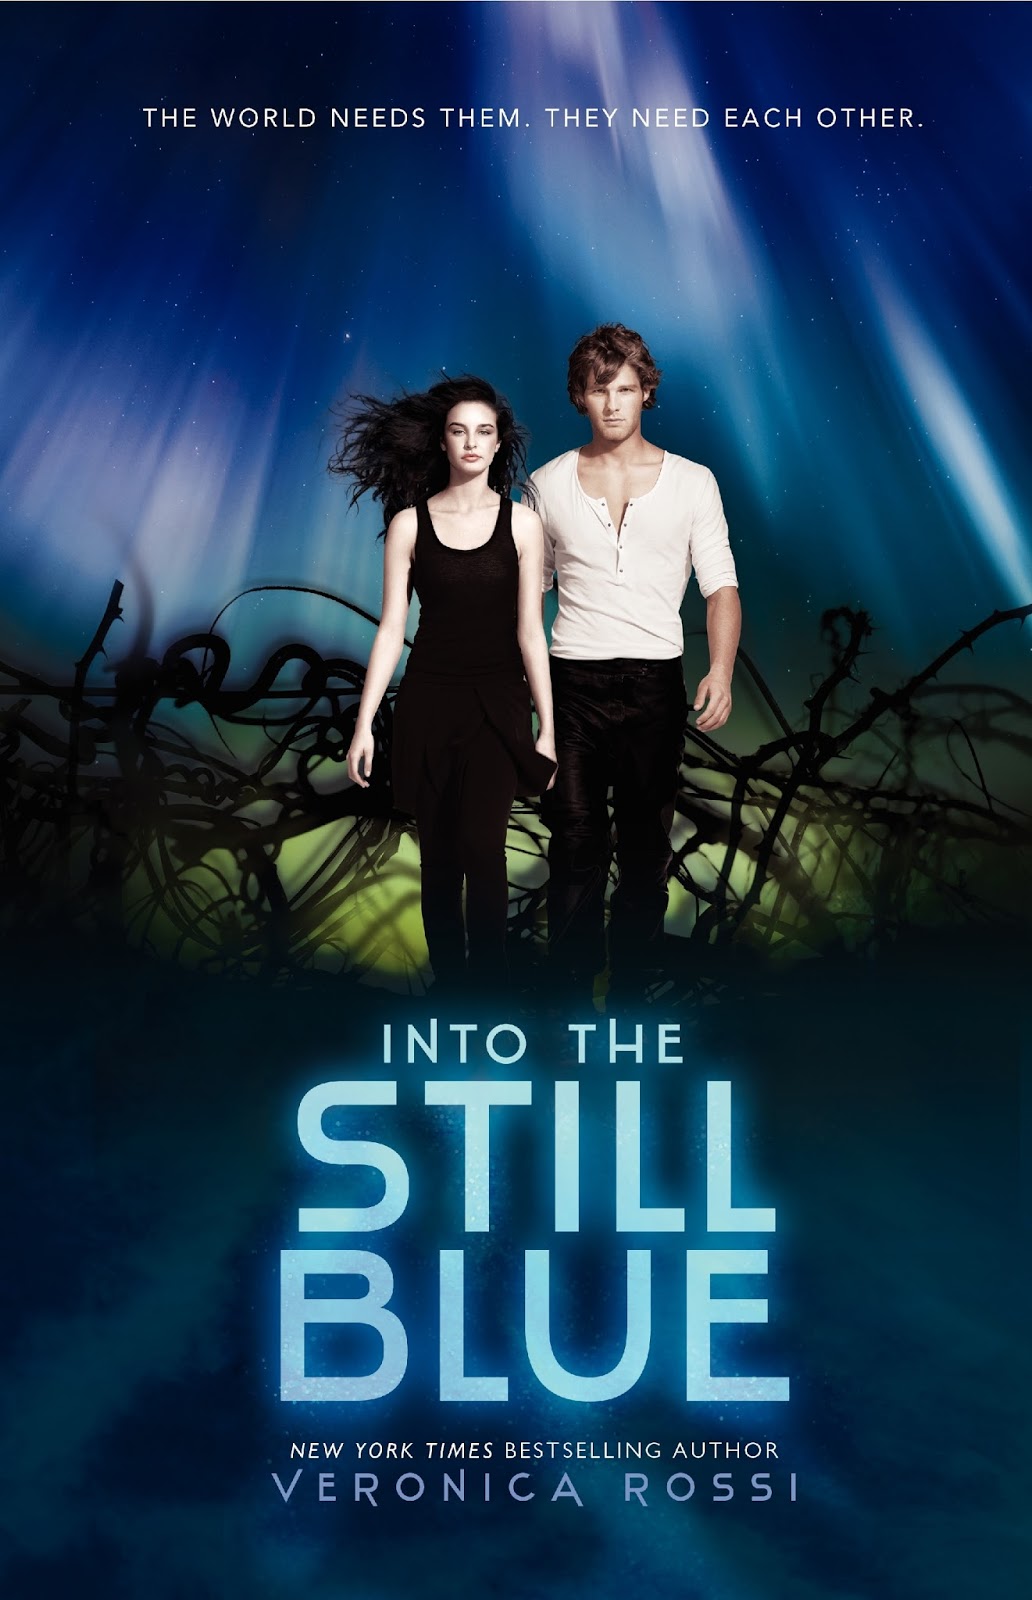 Veronica Rossi: Into The Still Blue Cover!